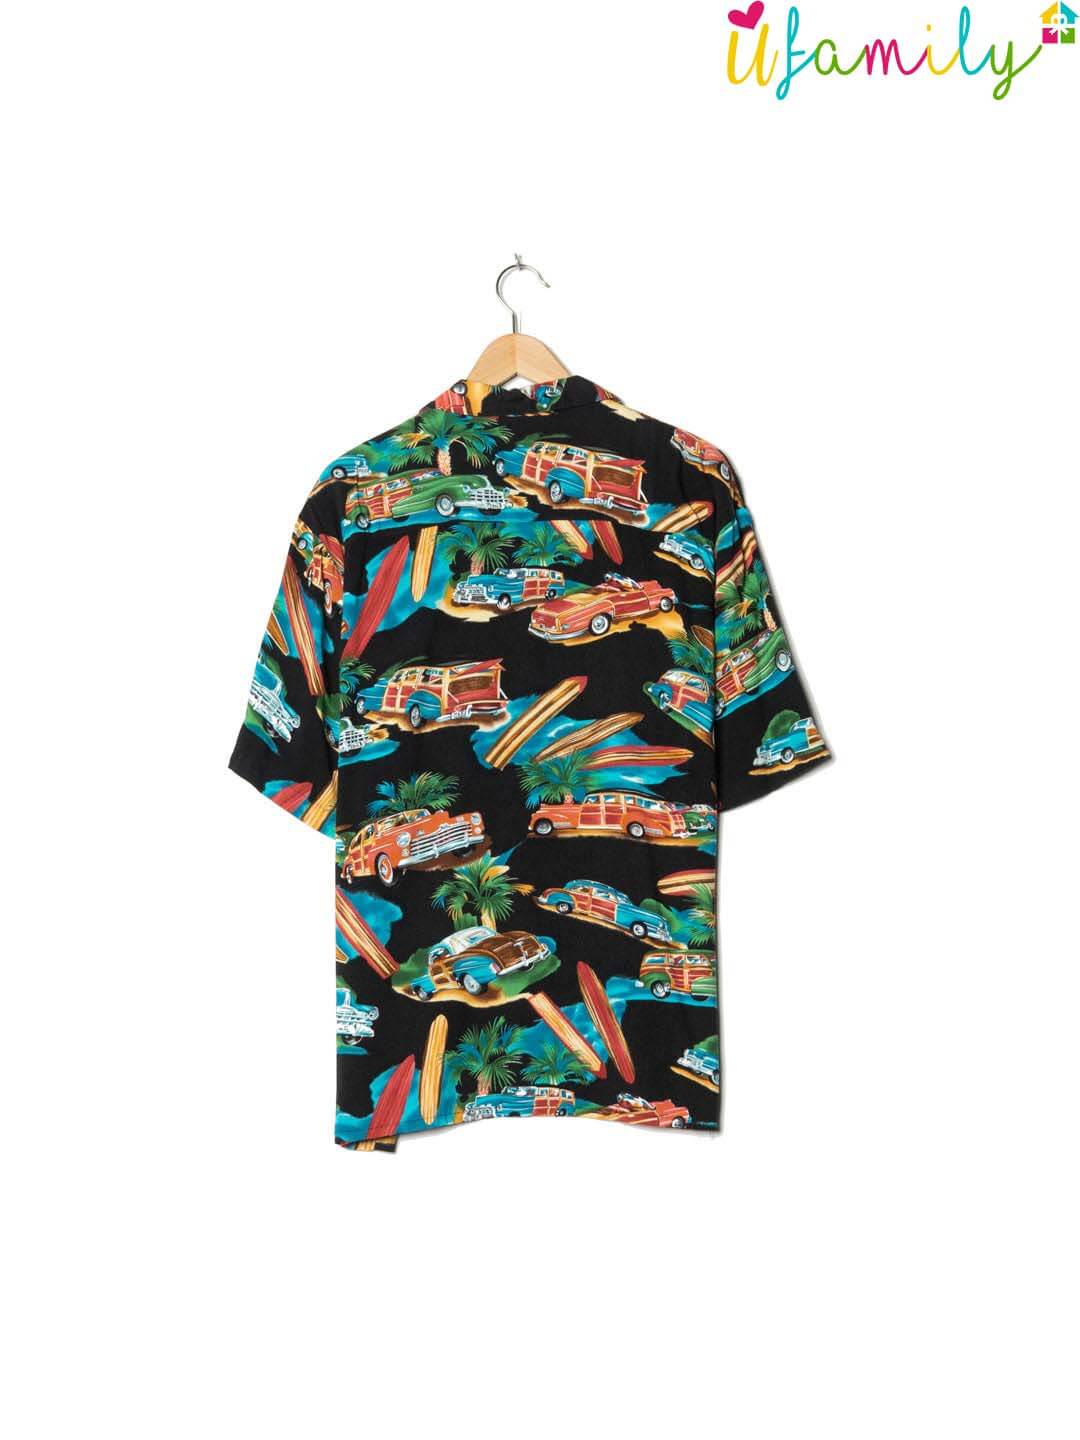 Next Original Black Vintage Hawaiian Shirt